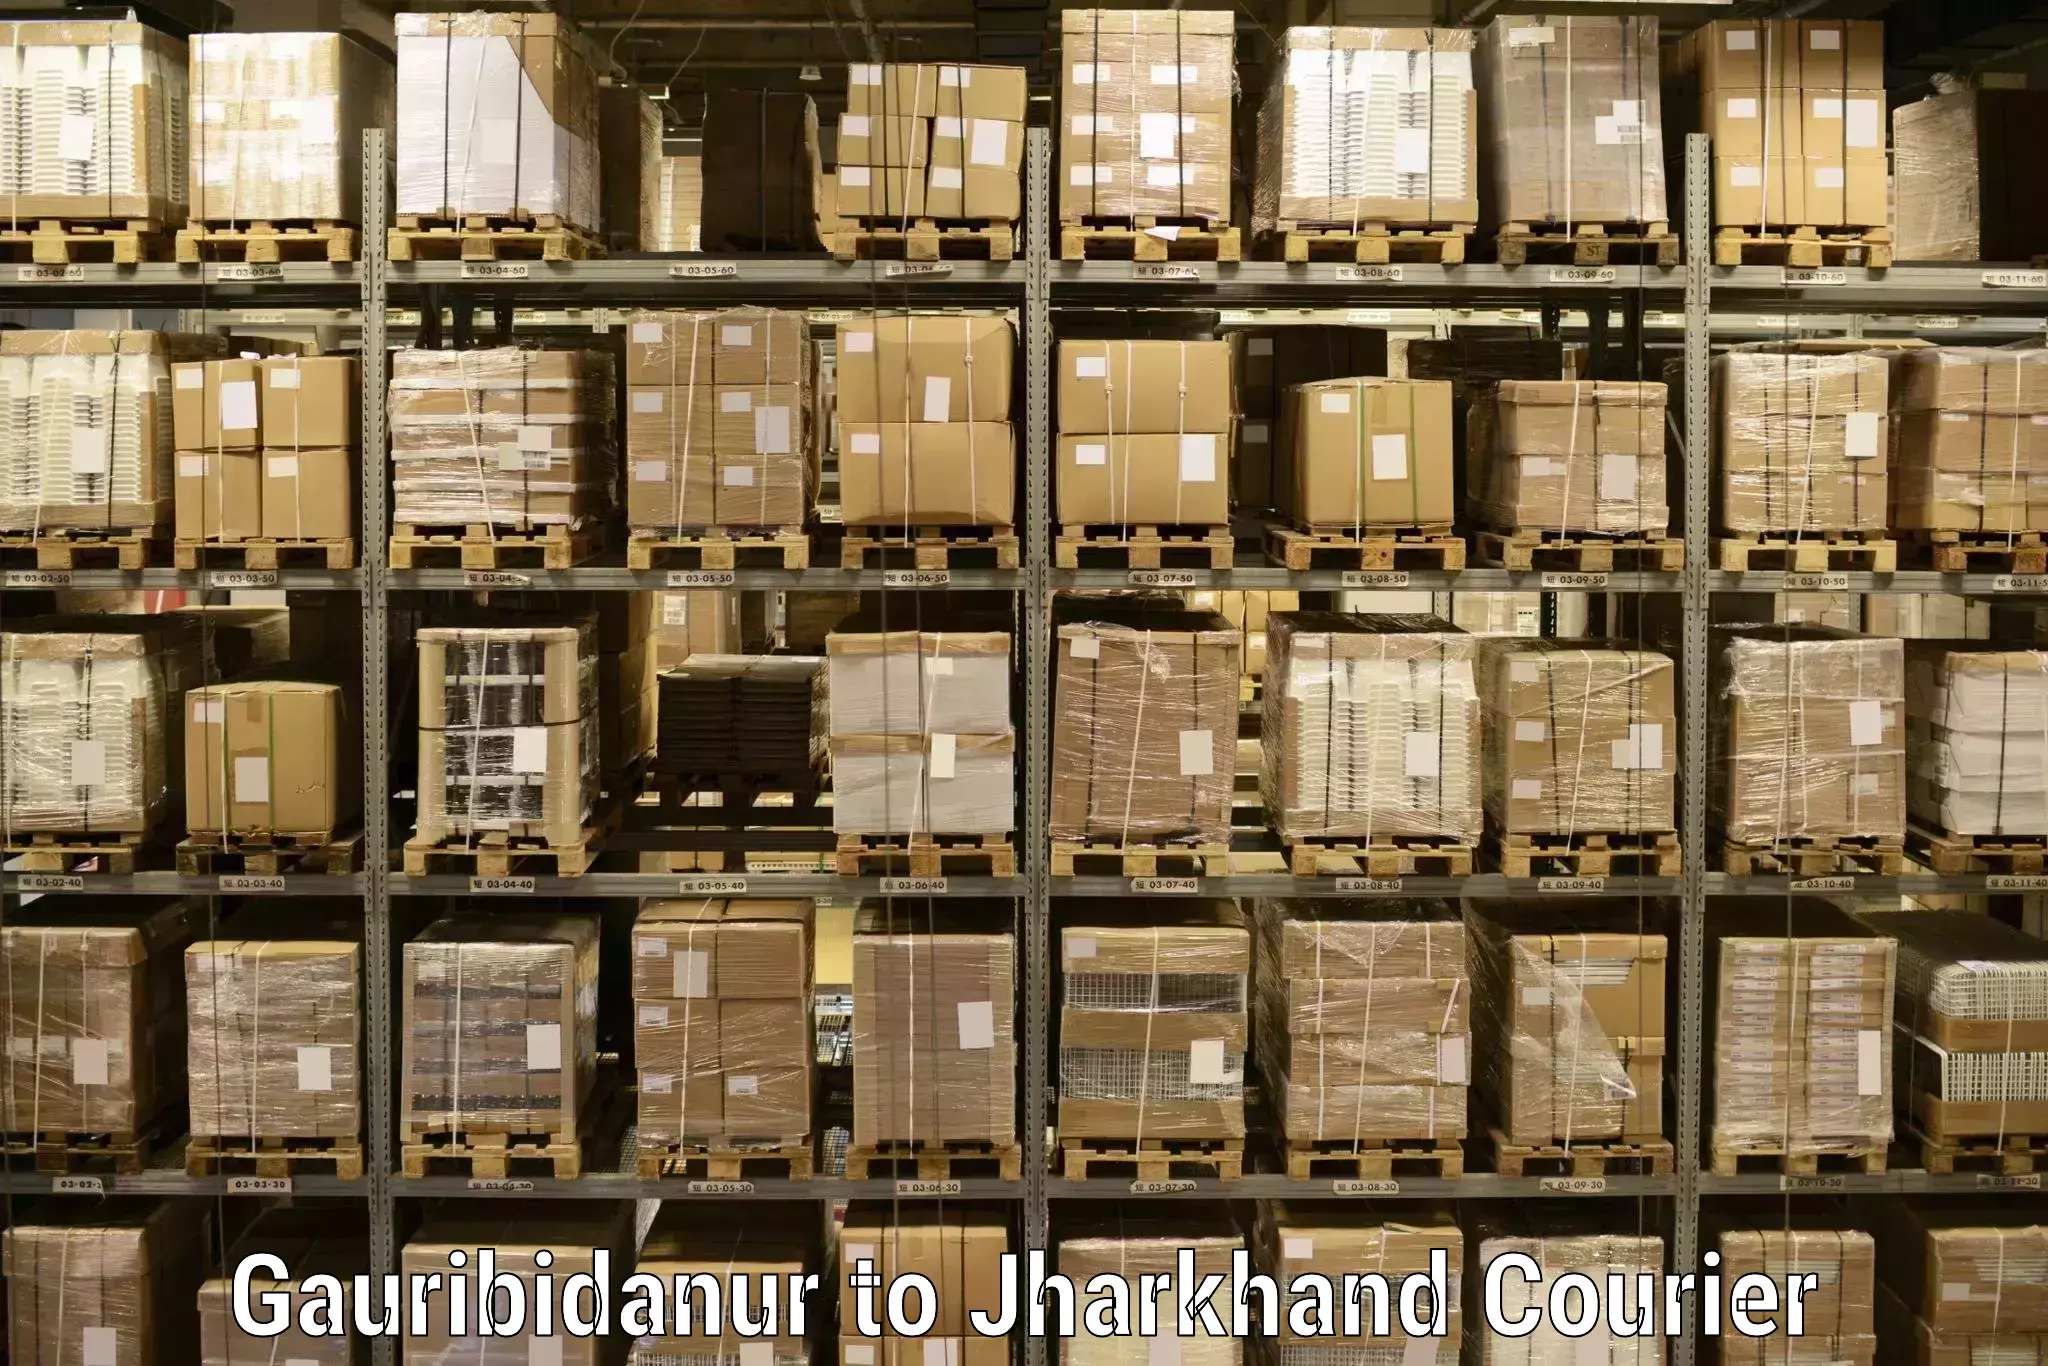 Efficient parcel service Gauribidanur to Chandankiyari